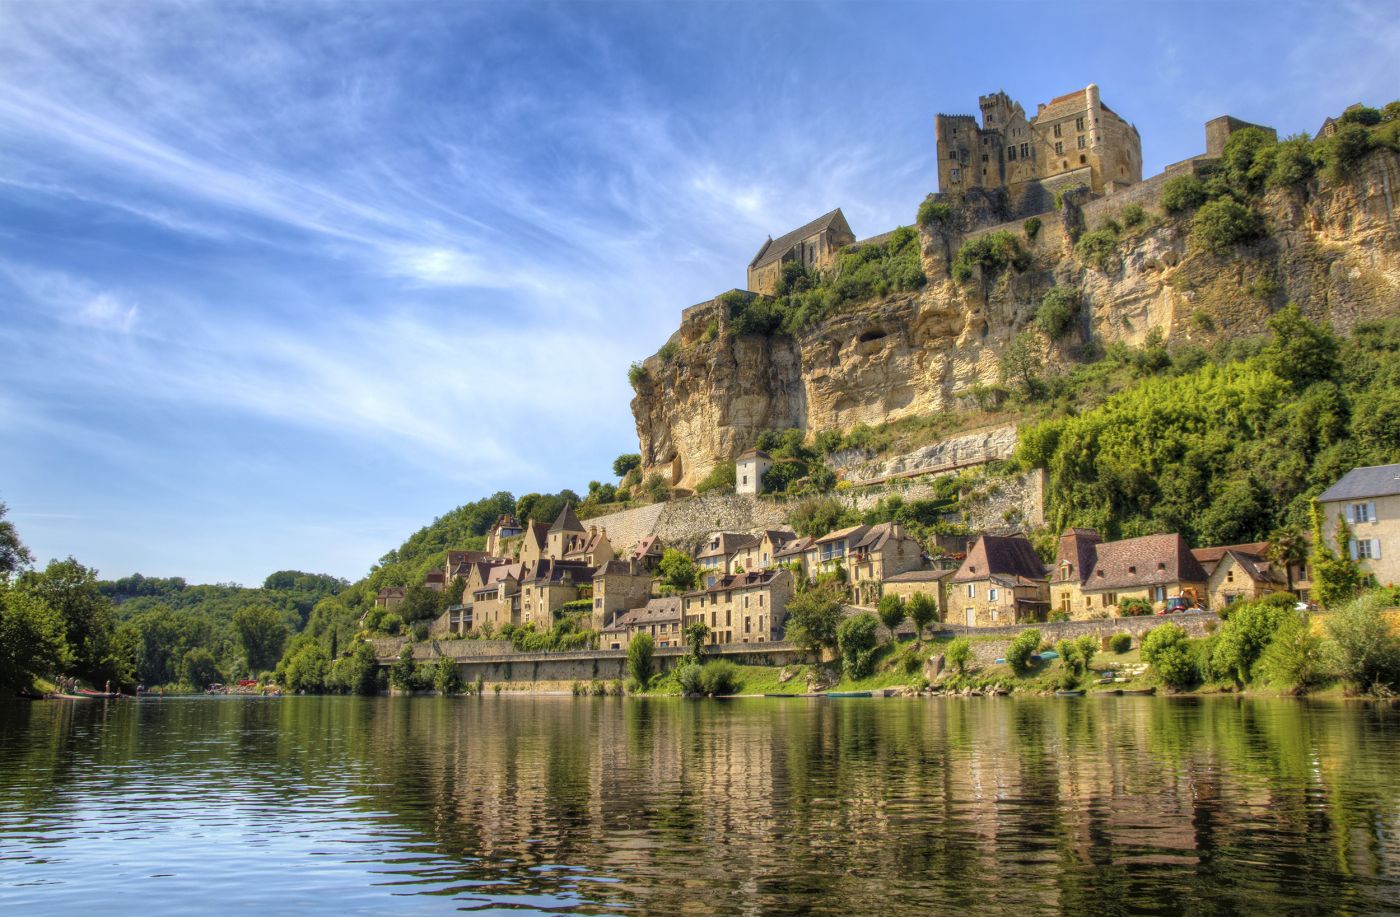 Tỉnh Dordogne với vẻ đẹp thiên nhiên đầy thơ mộng với dòng sông, rừng núi và thảm cỏ